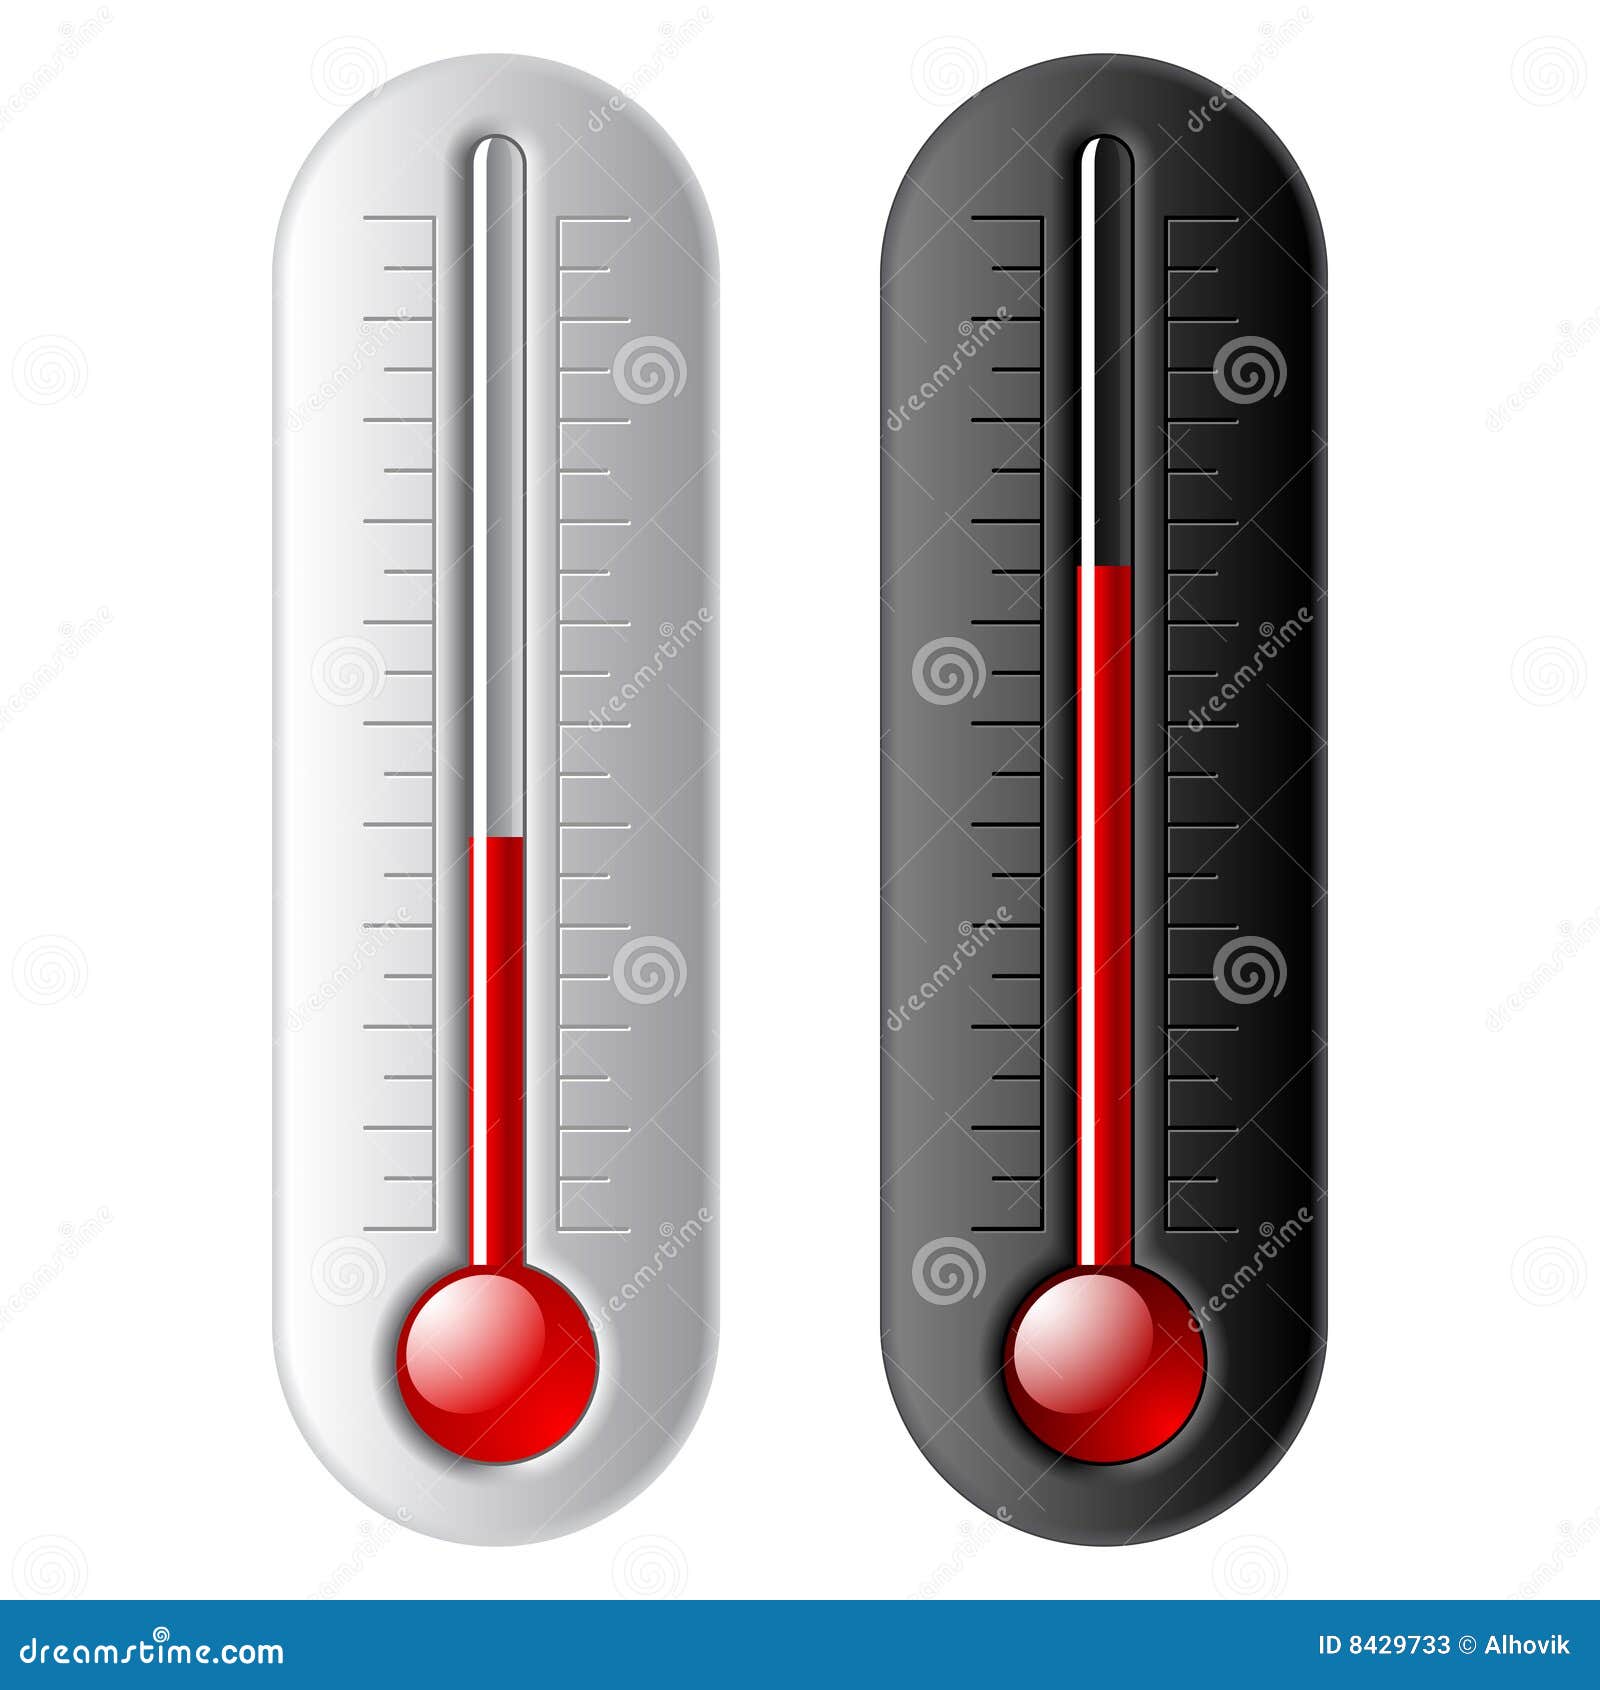 Thermomètres droits verticaux